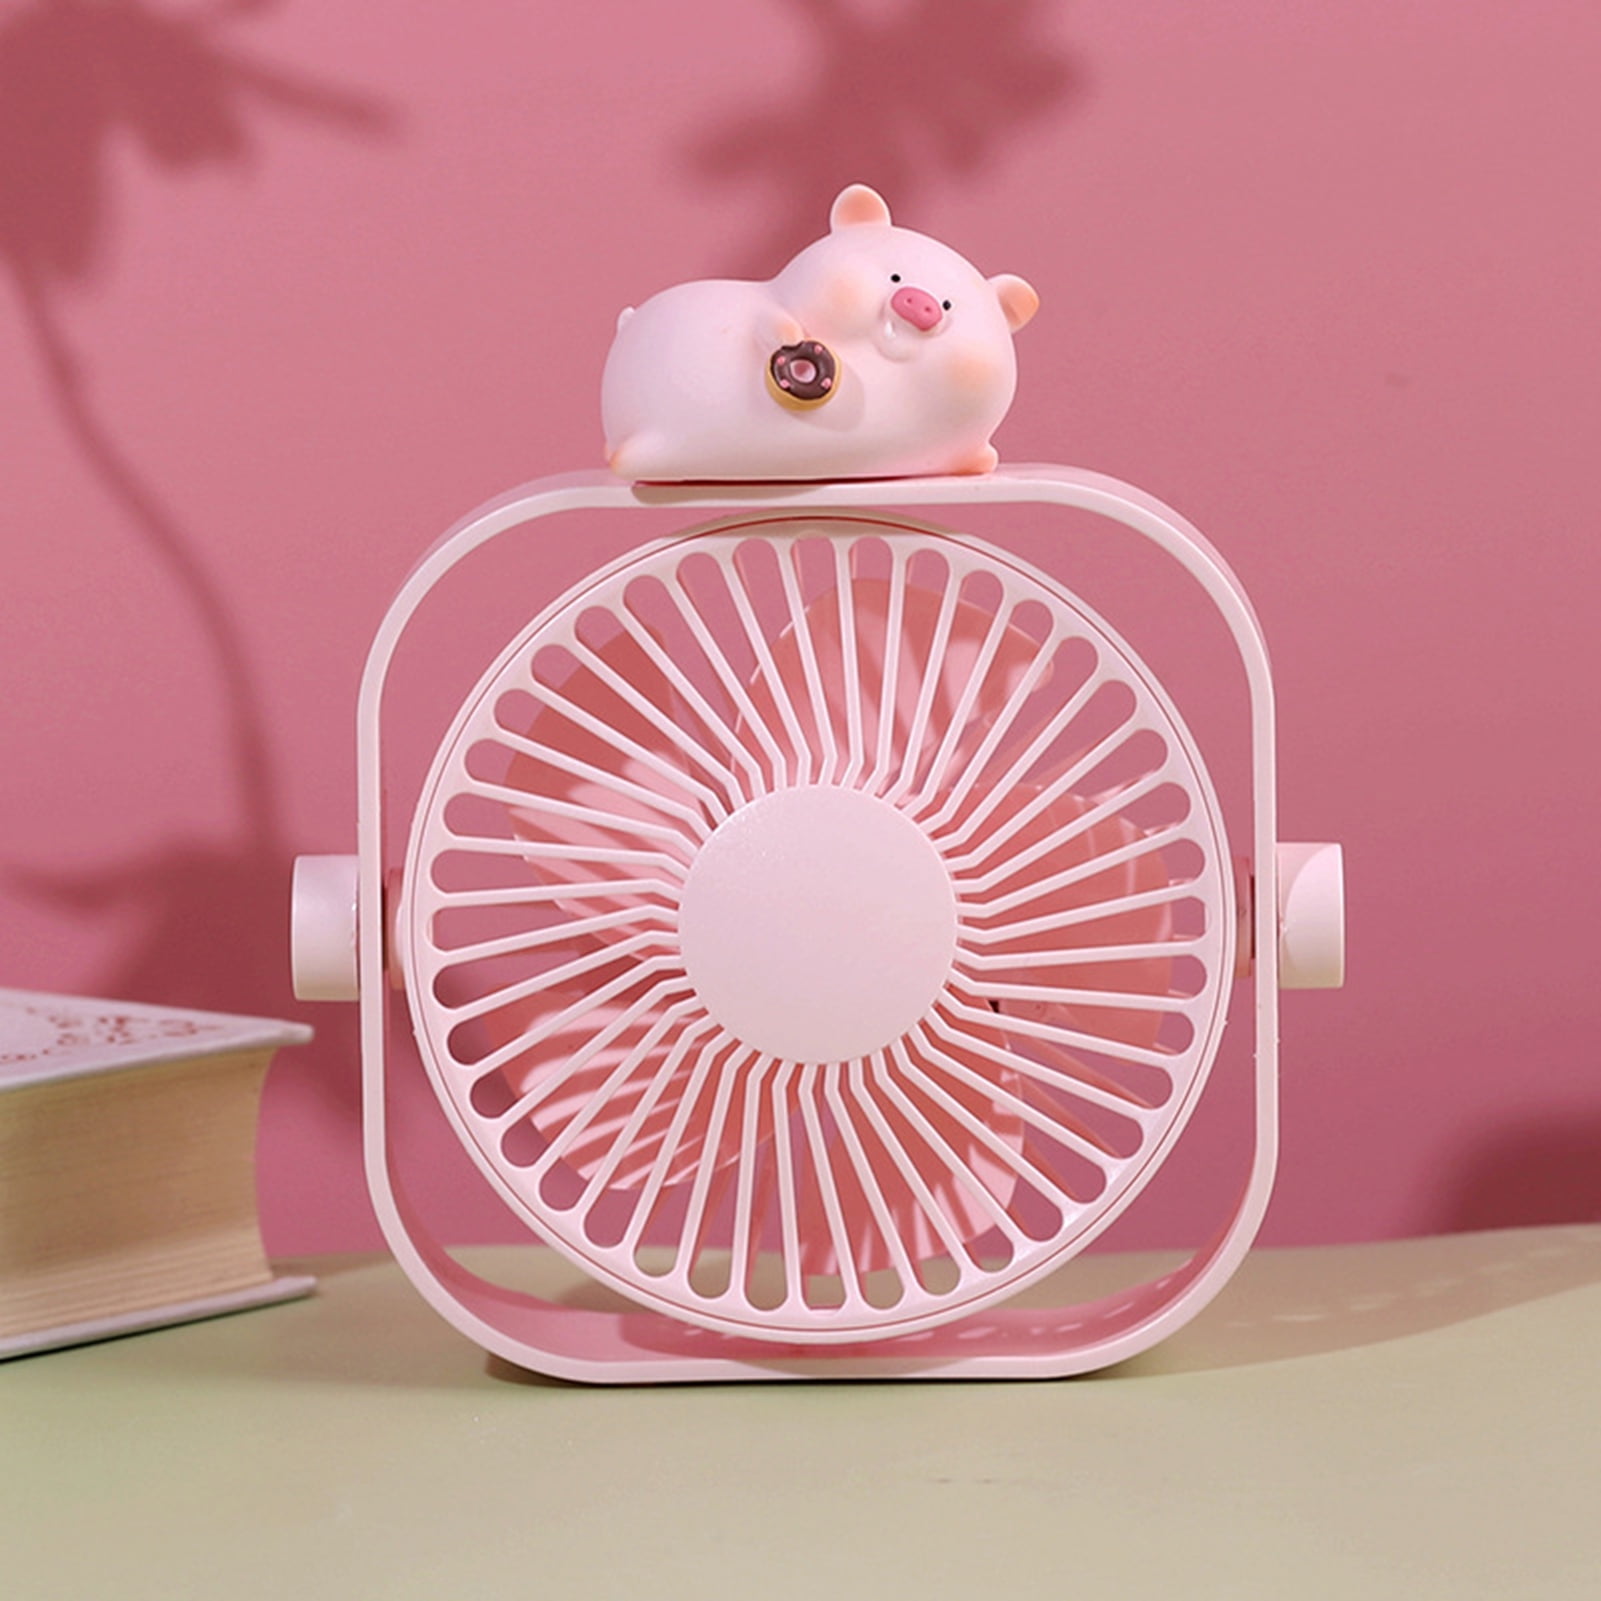 Decor Store Mini Fan Portable Strong Wind 3 Speed Cute Cartoon Desktop USB  Cooling Fan for Kids Room